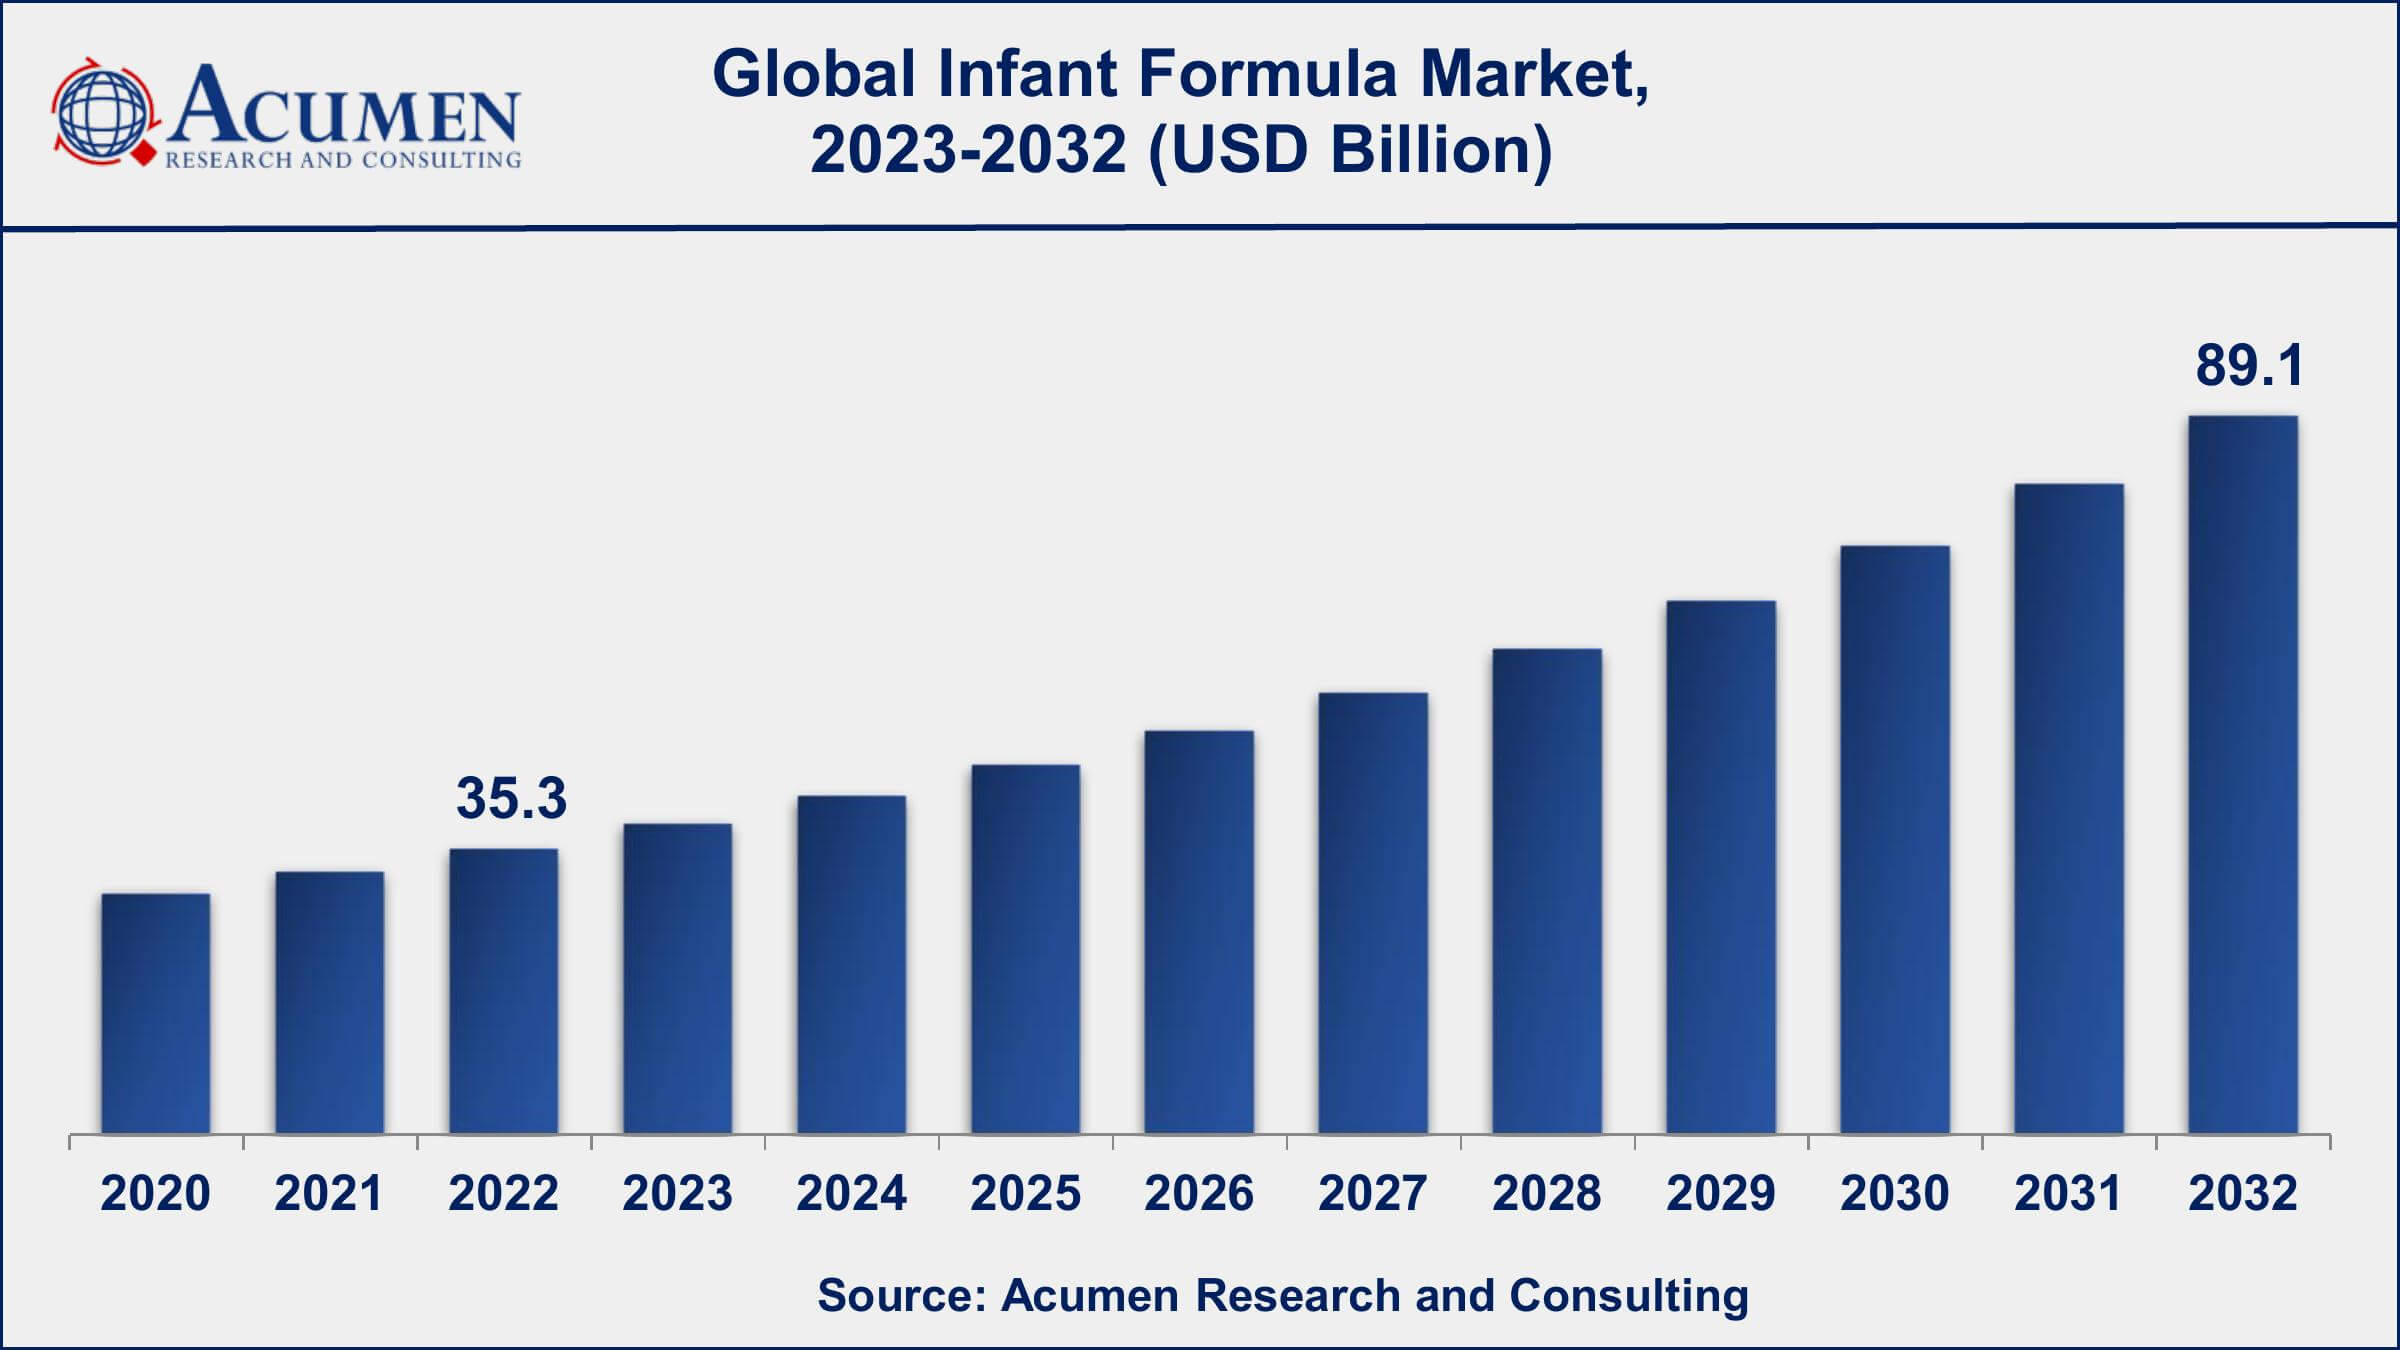 Global Infant Formula Market Dynamics